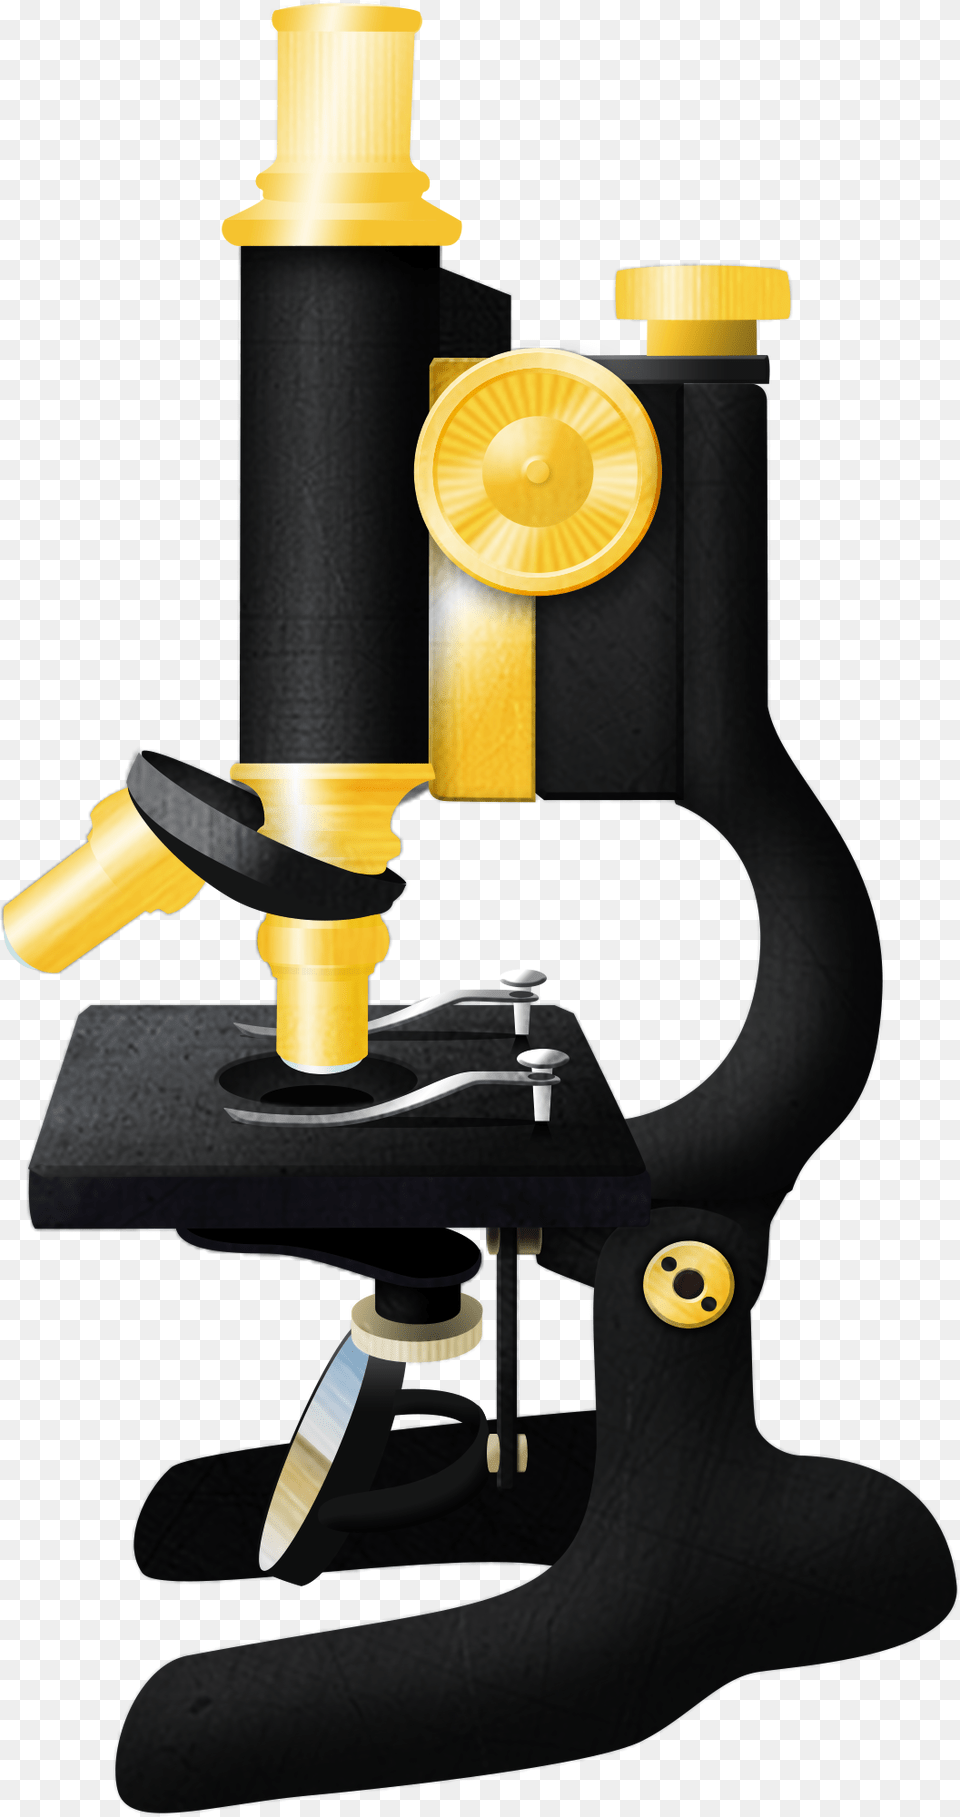 Imagej Imagej Logo, Microscope Free Transparent Png